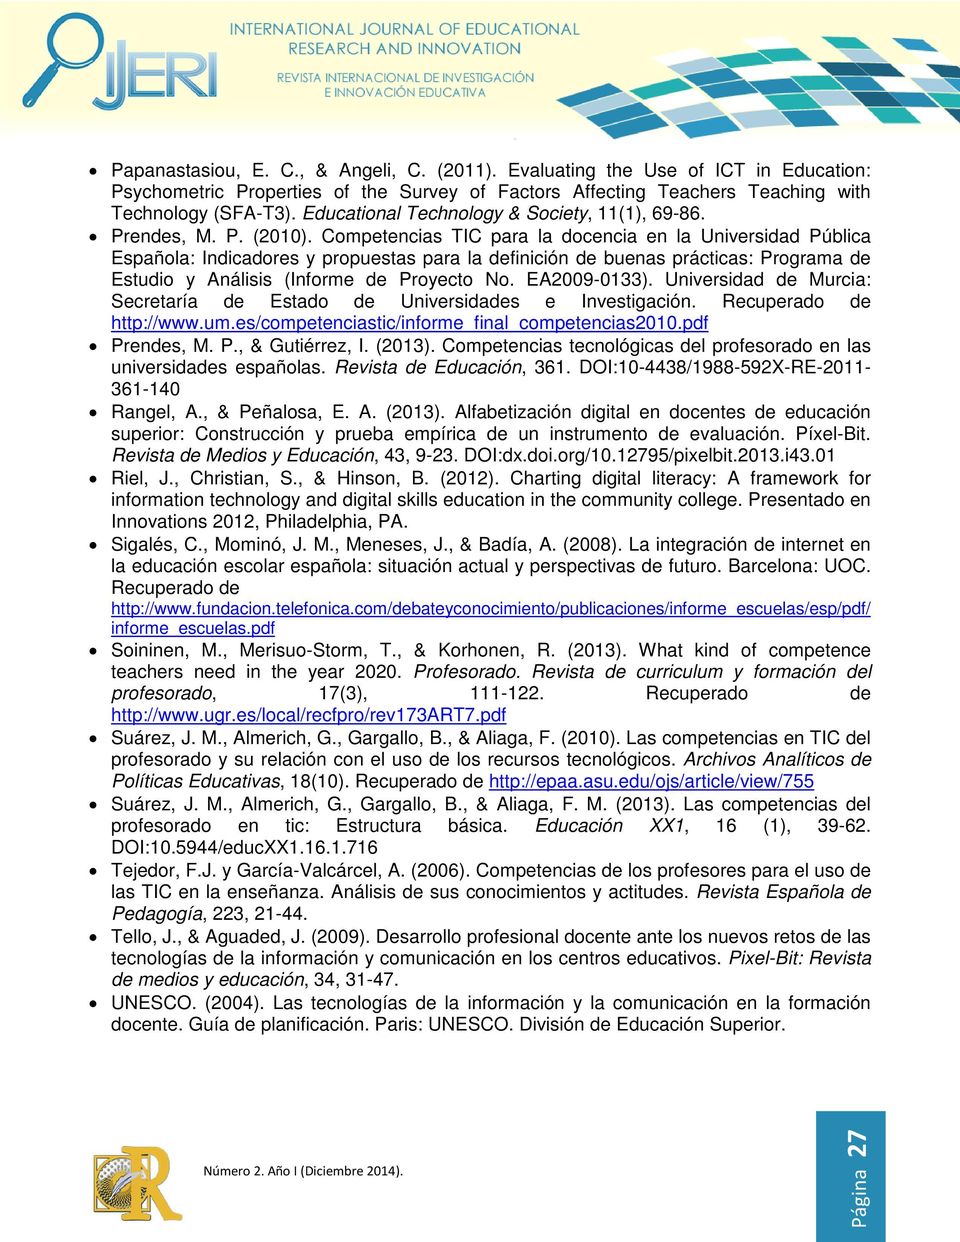 Competencias TIC para la docencia en la Universidad Pública Española: Indicadores y propuestas para la definición de buenas prácticas: Programa de Estudio y Análisis (Informe de Proyecto No.